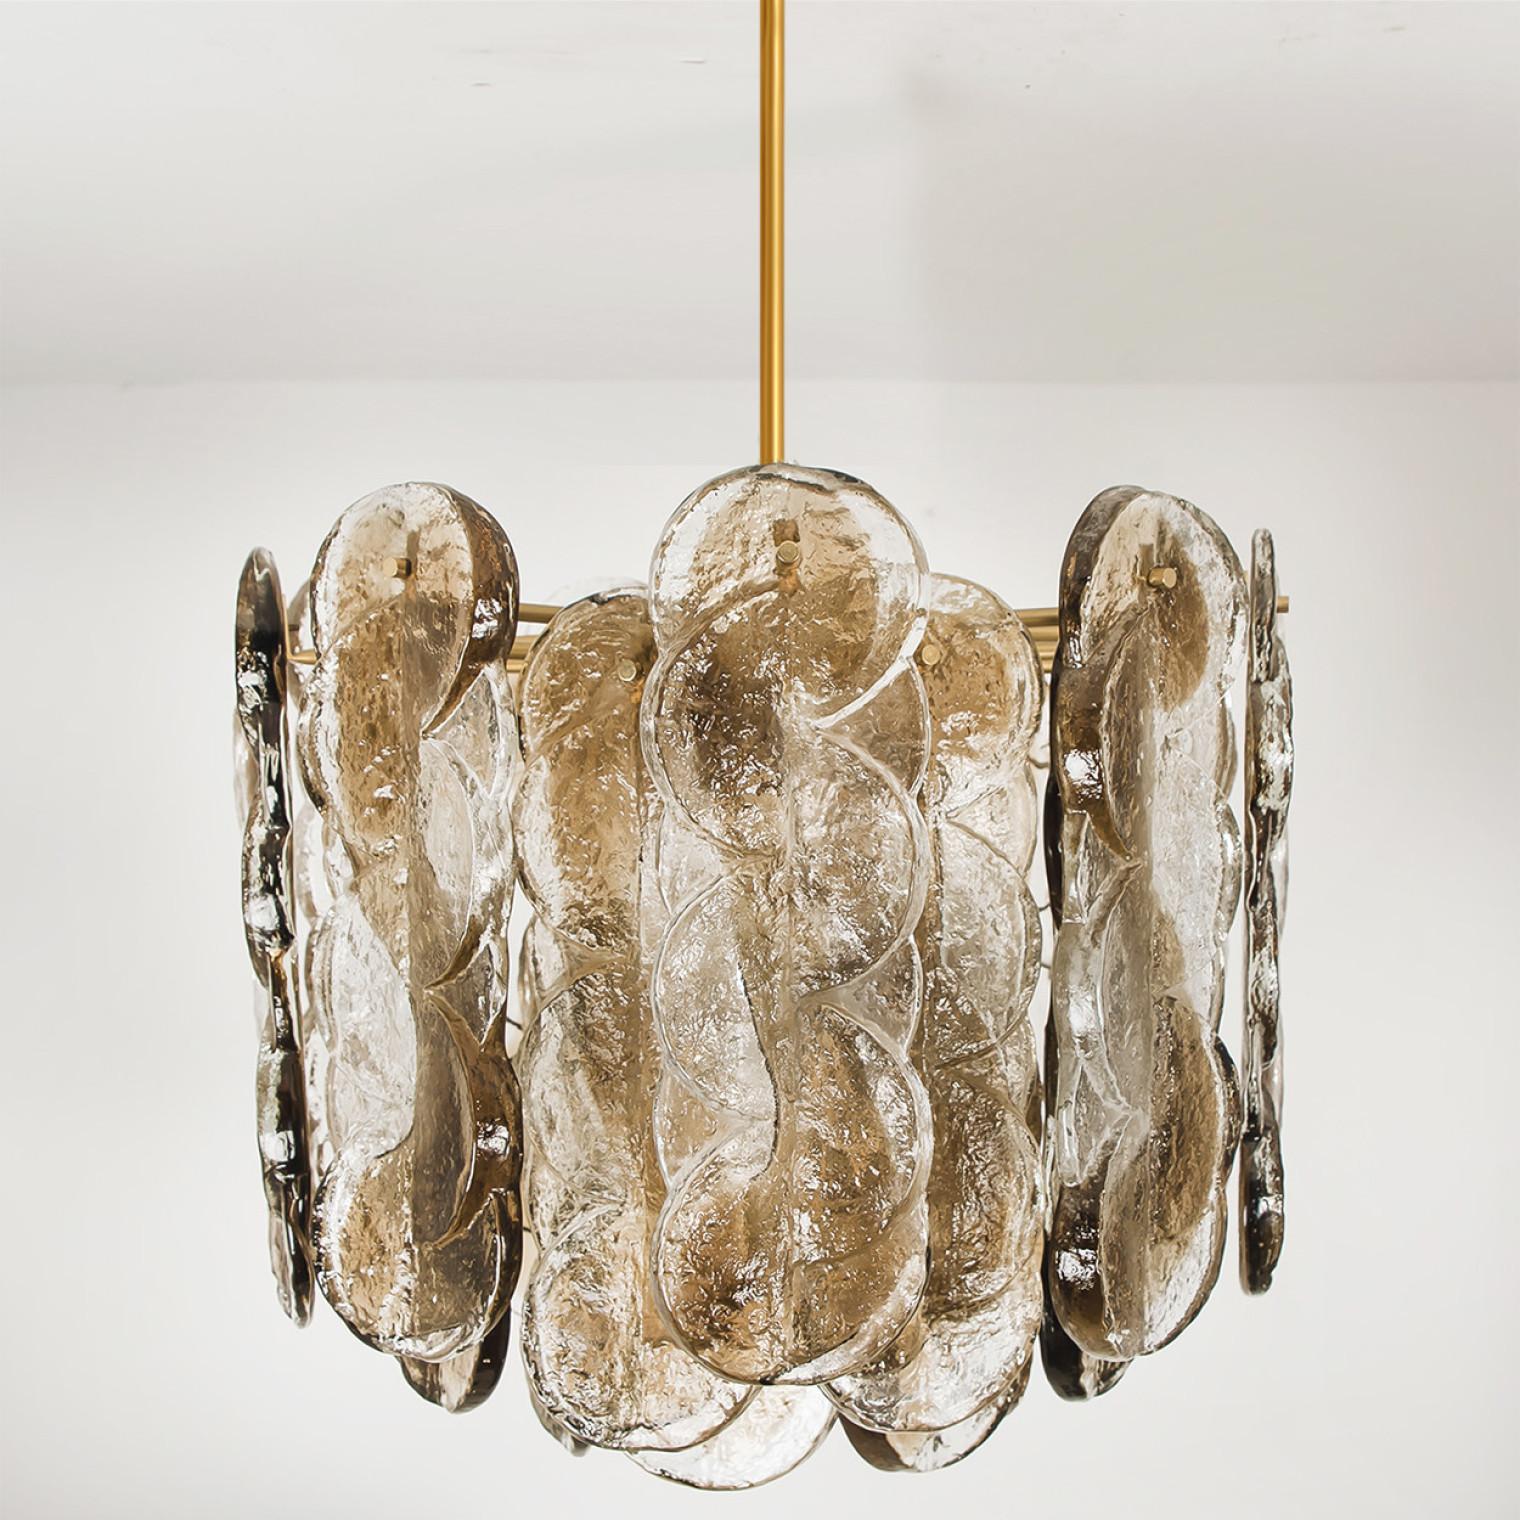 Hochwertiger Murano-Glaskronleuchter von Kalmar, 1960er Jahre, geräuchertes Wirbeleisglas, klare, gedrehte Kristallglasscheiben mit einem hellen, goldenen, bernsteinfarbenen Streifen darin.

Kalmar war der bedeutendste Produzent von hochwertigen